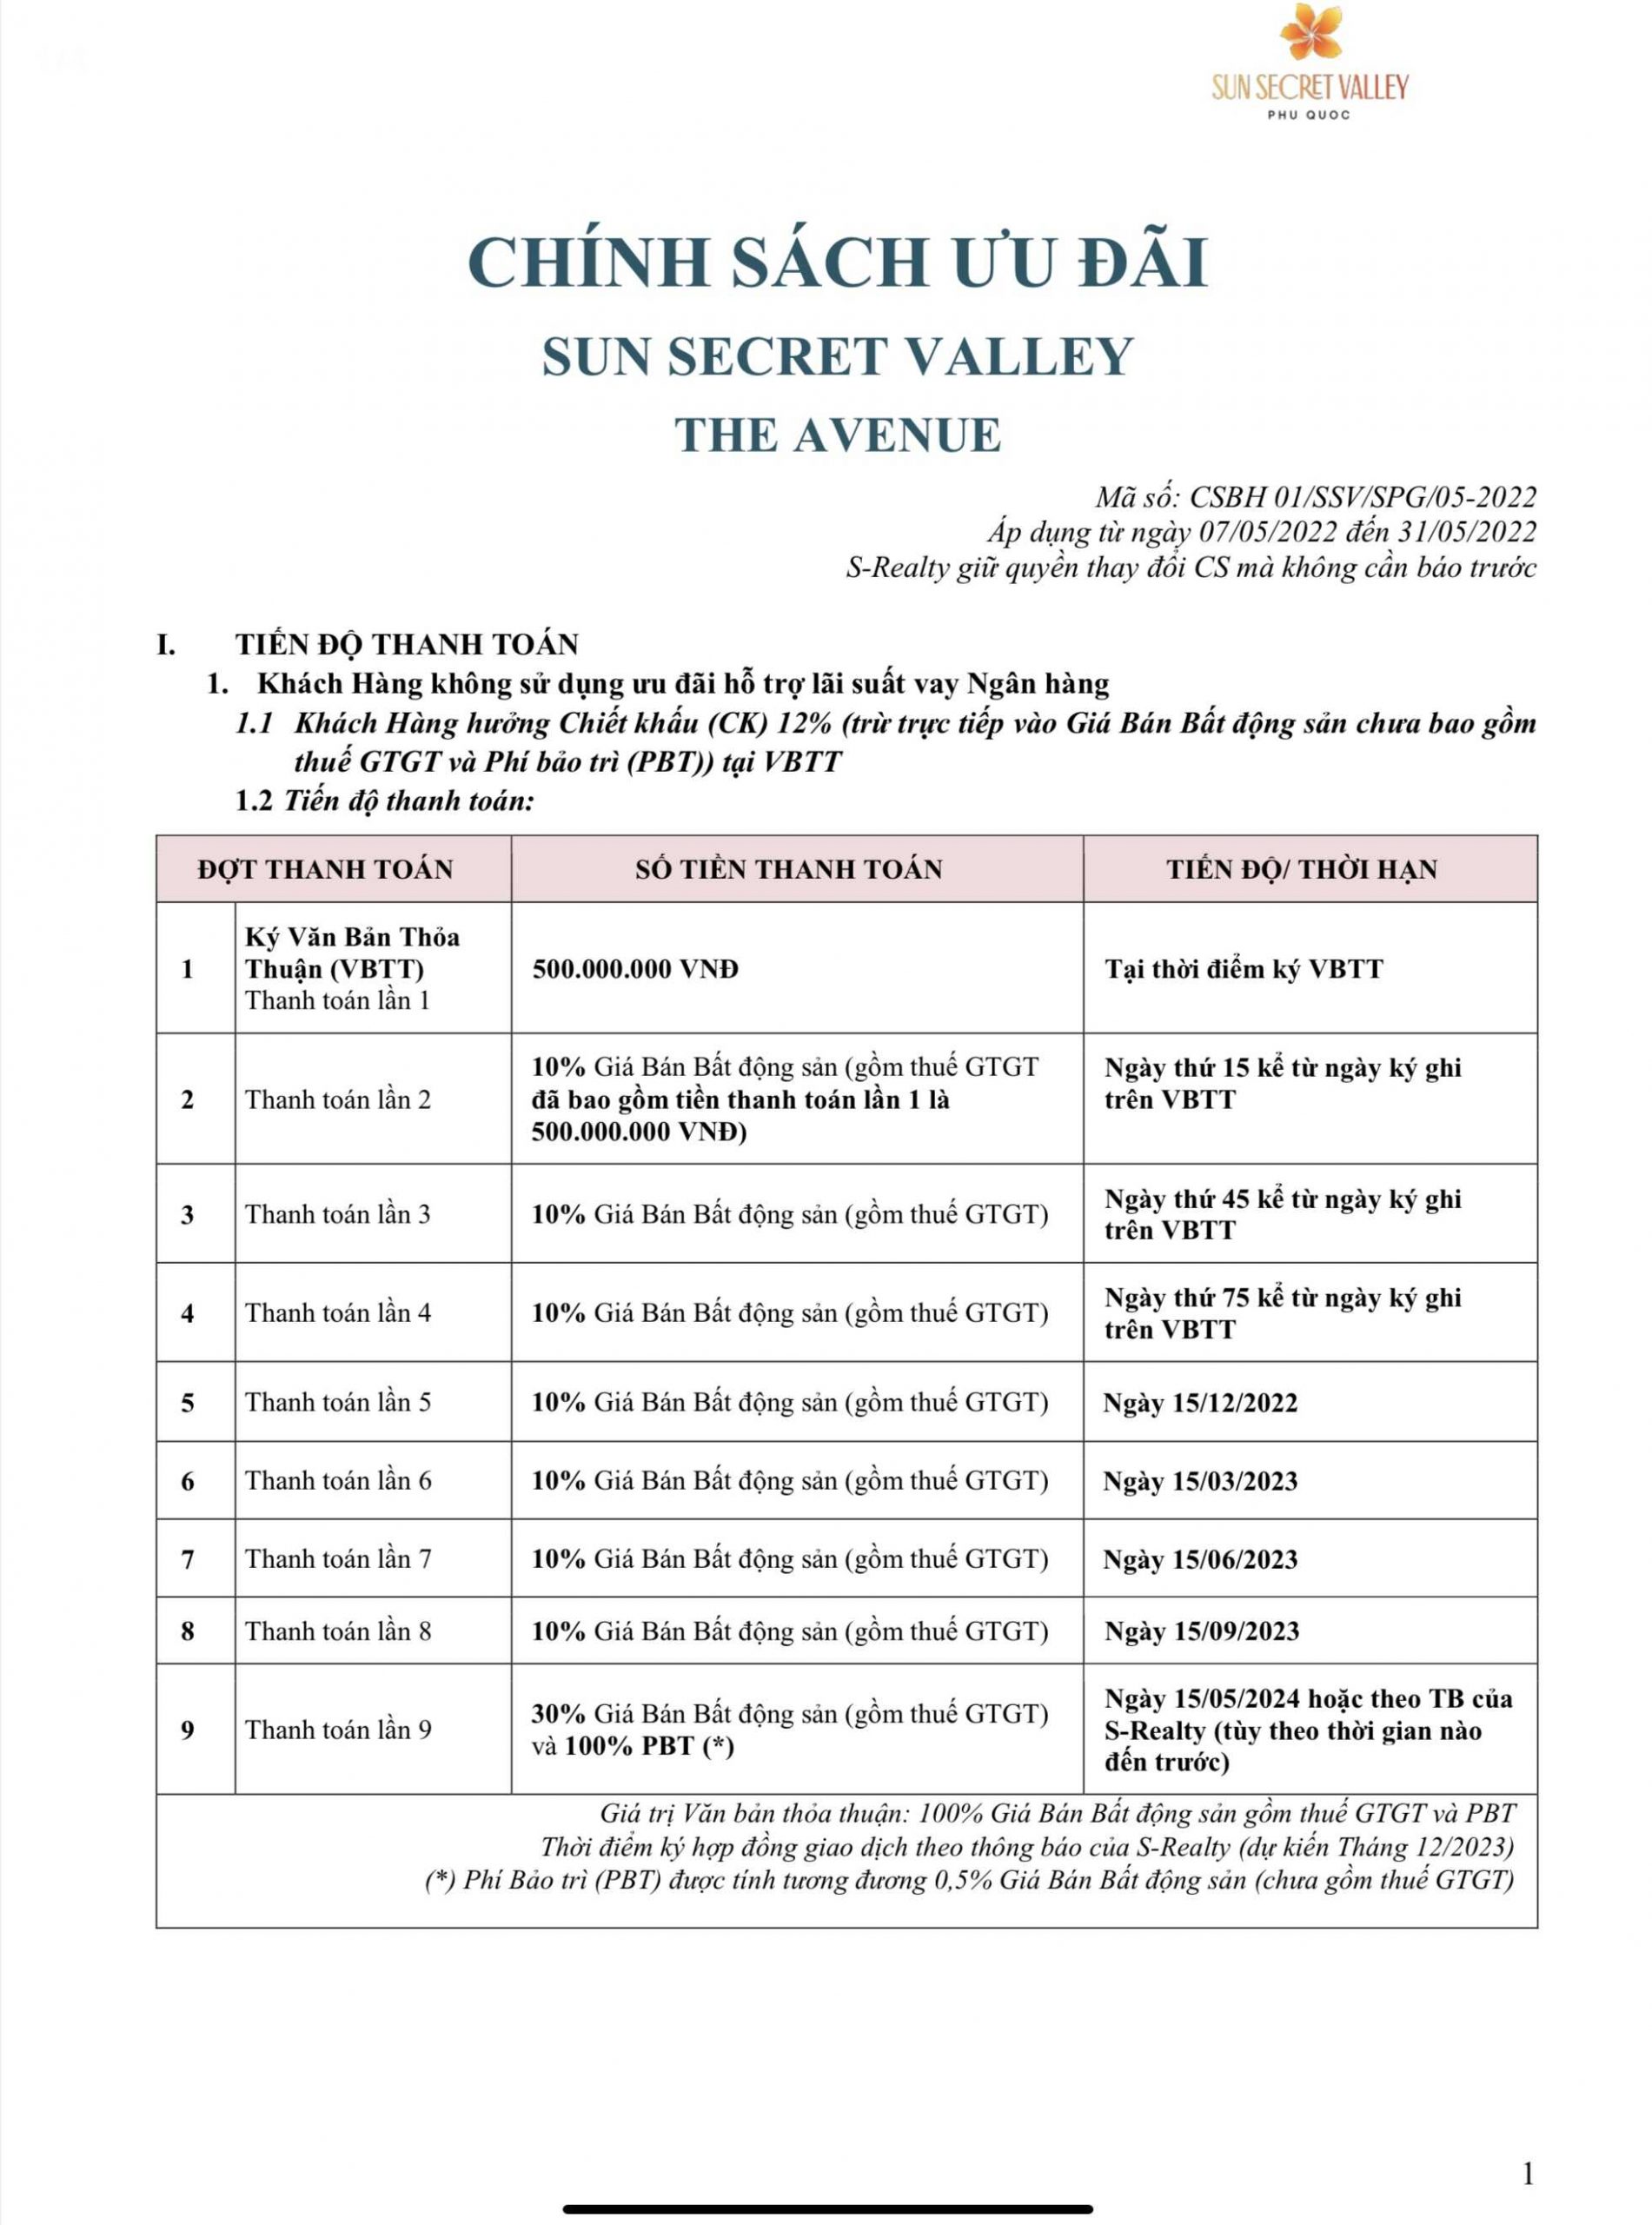 CSBH Sun Secret Valley phân khu The Avenue trang 2